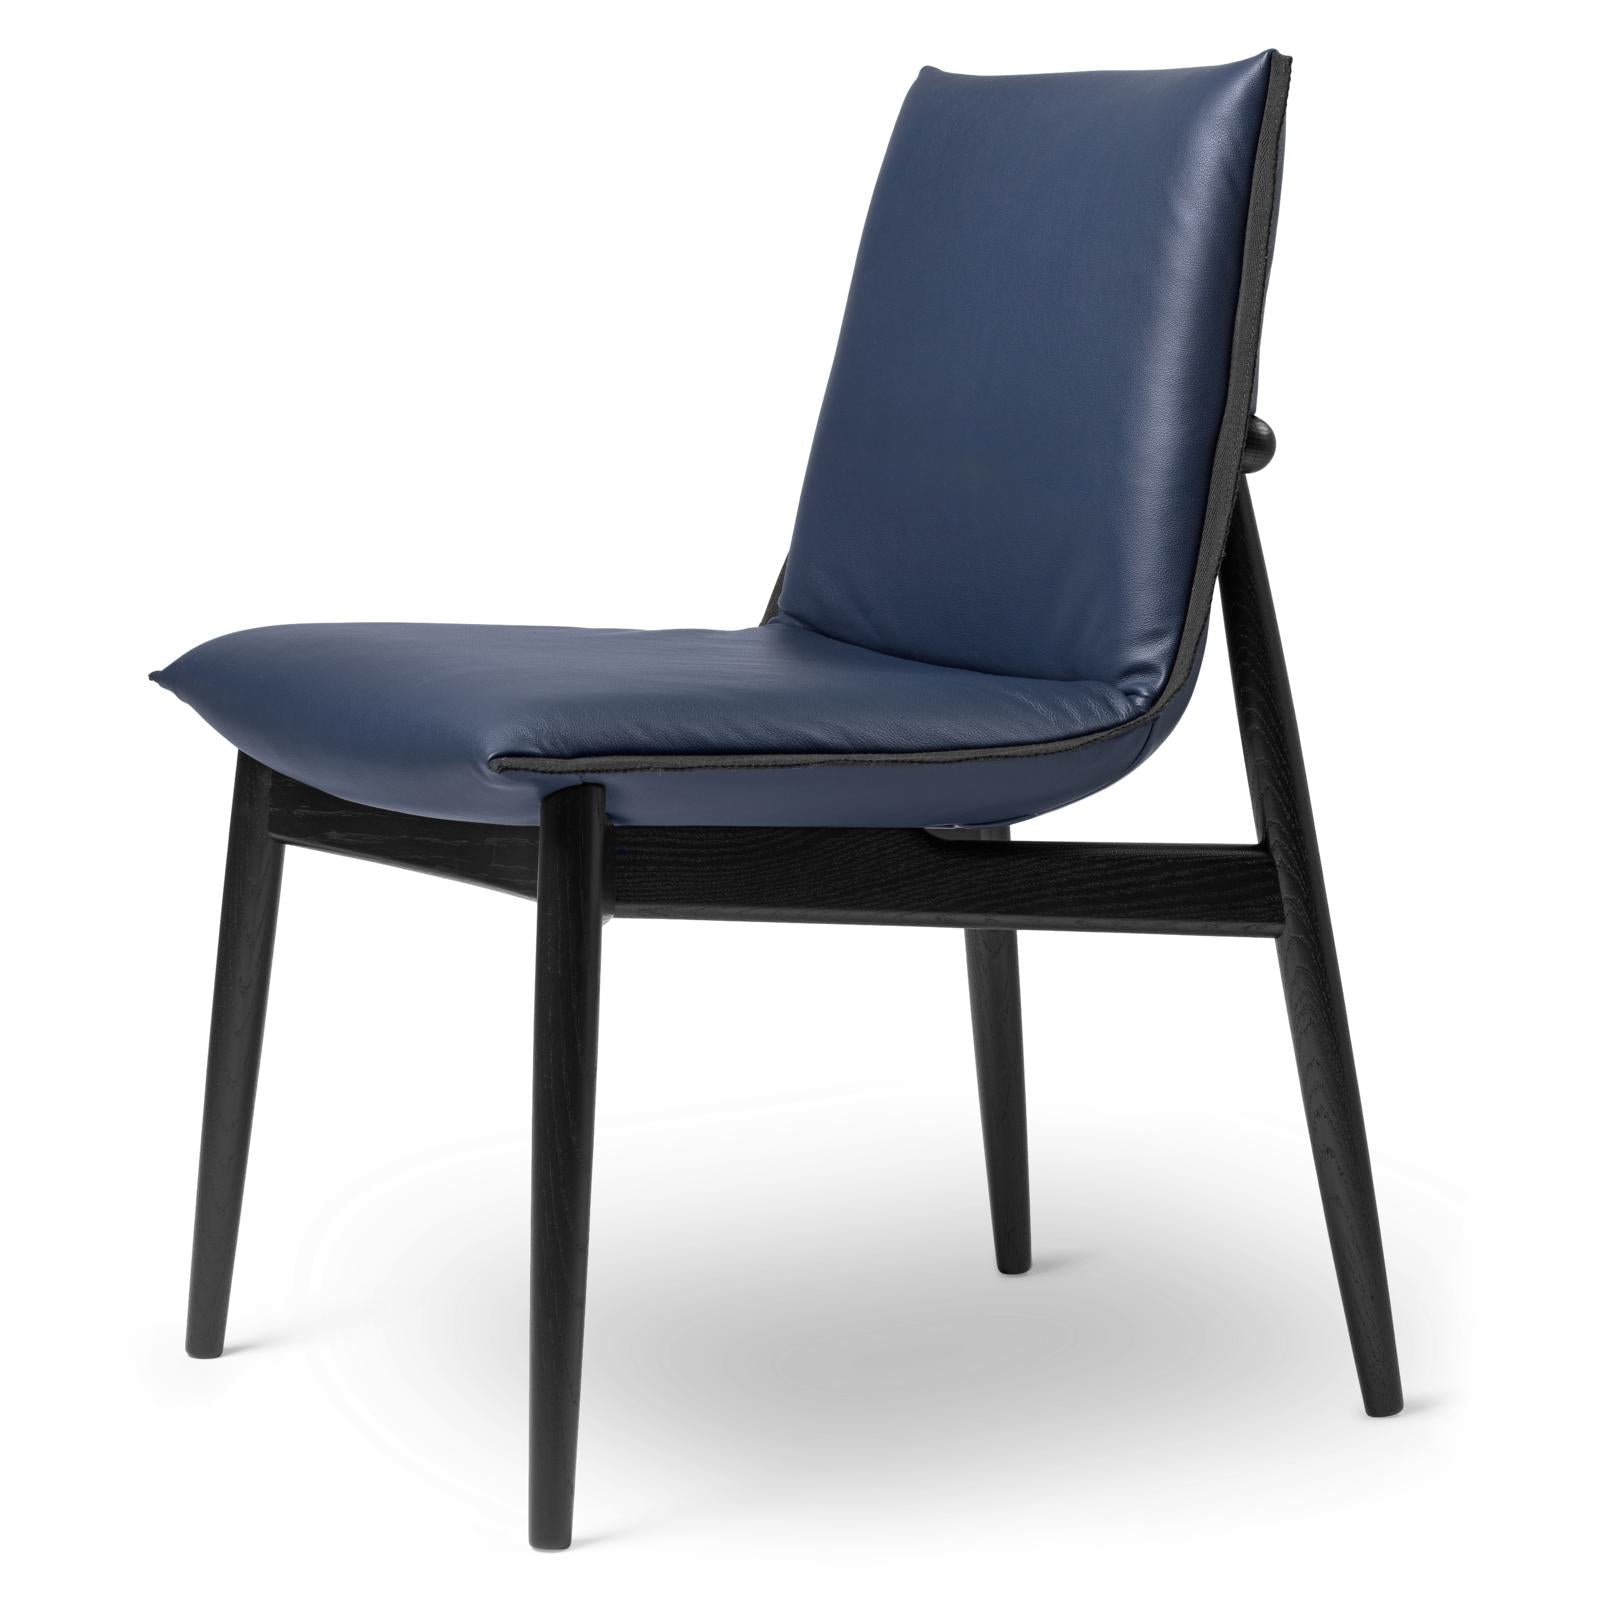 Carl Hansen E004 Embrace krzesło, lakierowany dąb, niebieska skóra